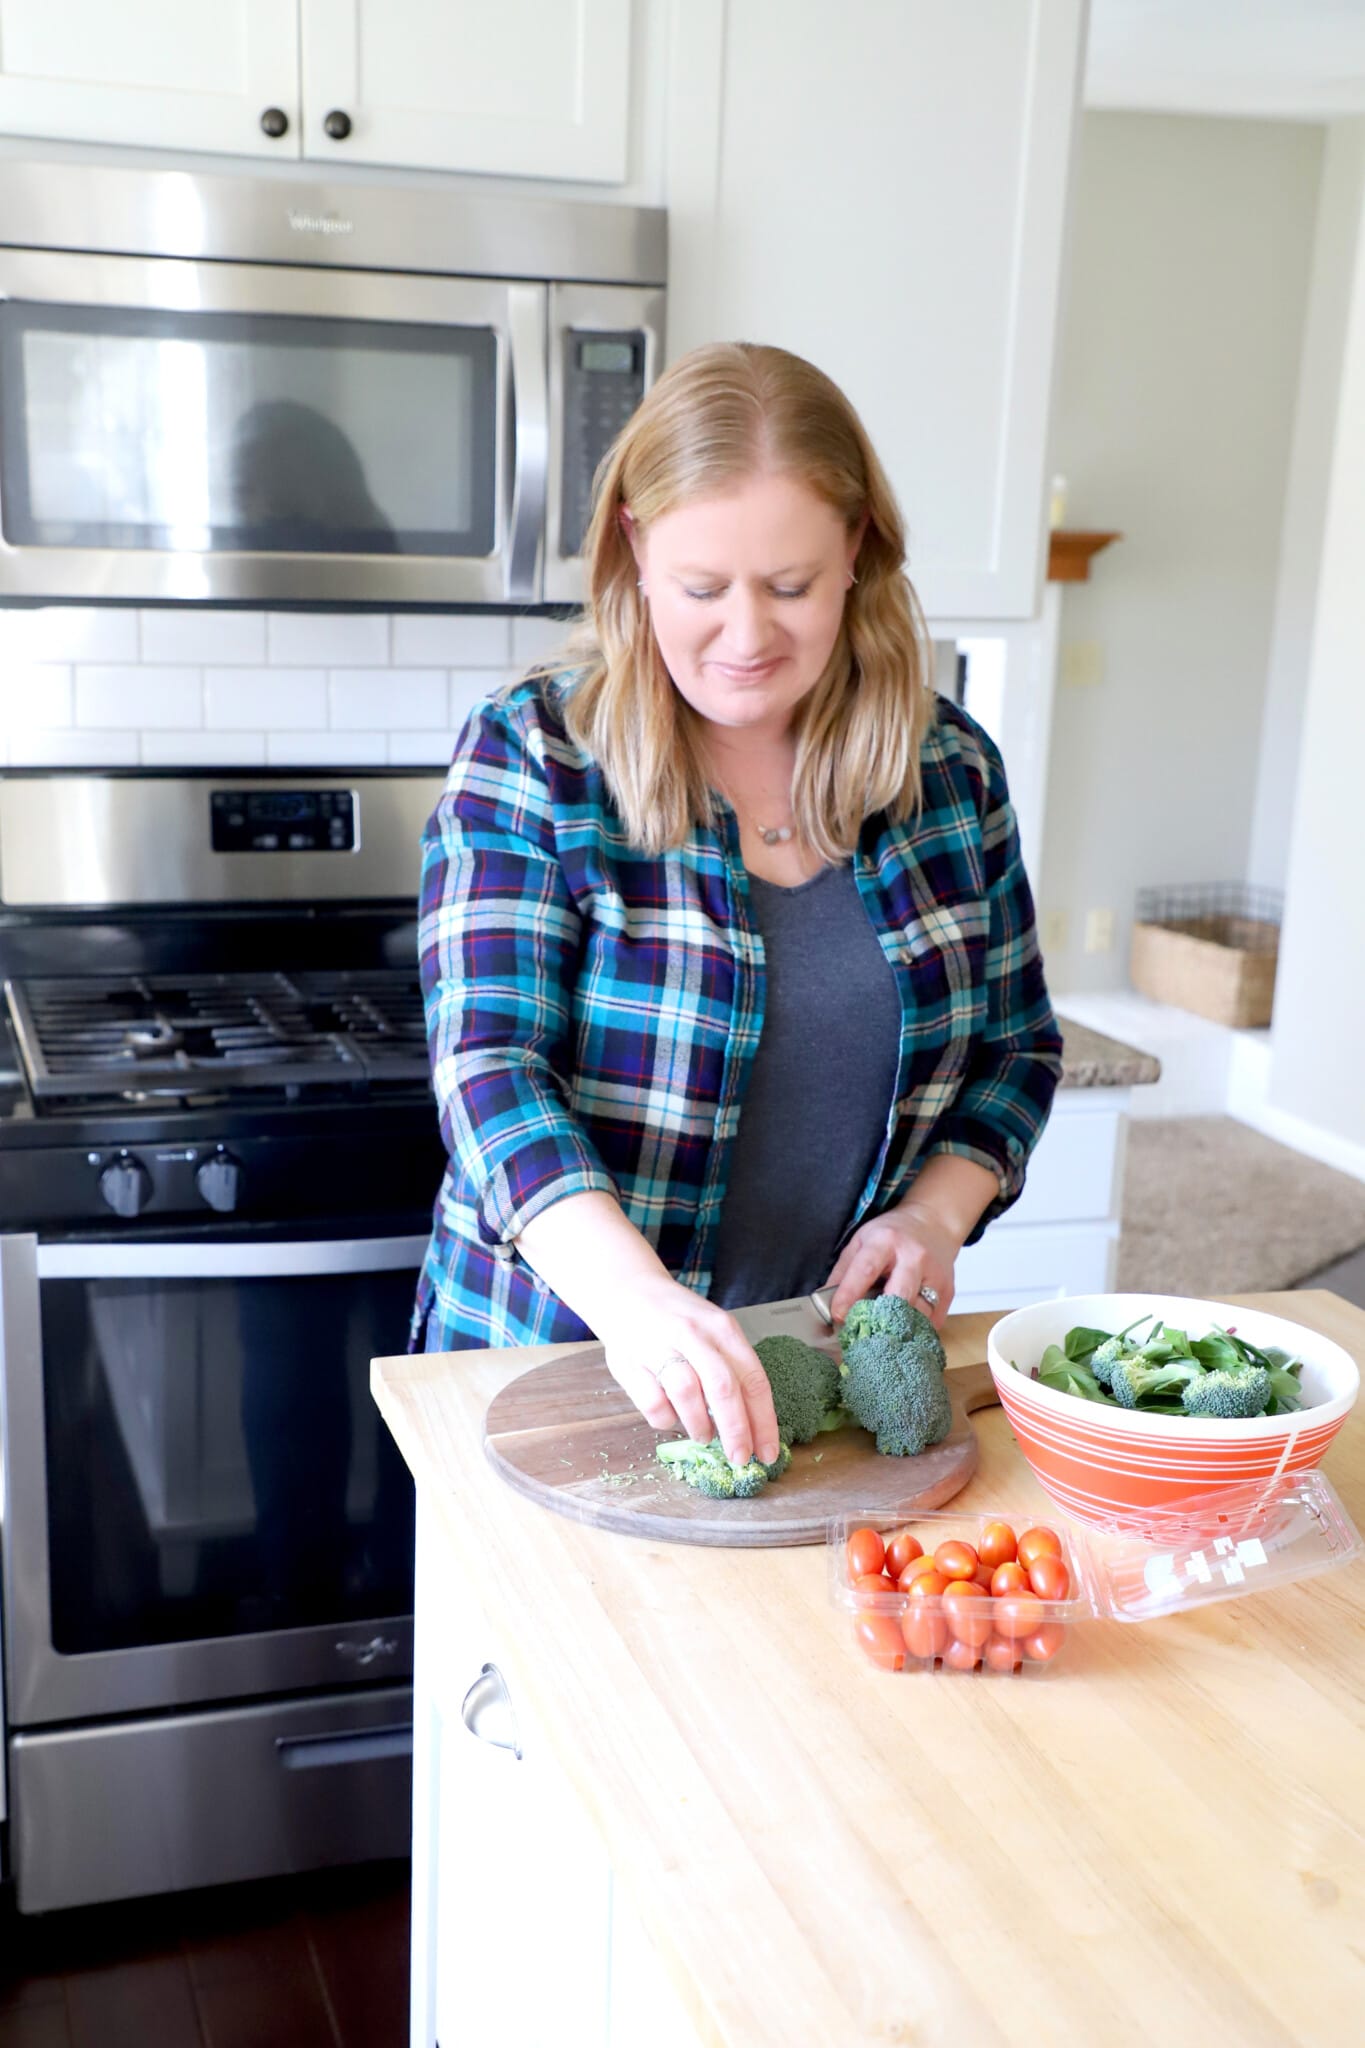 10 Life Changing Food Hacks - Time Saving Kitchen Tips